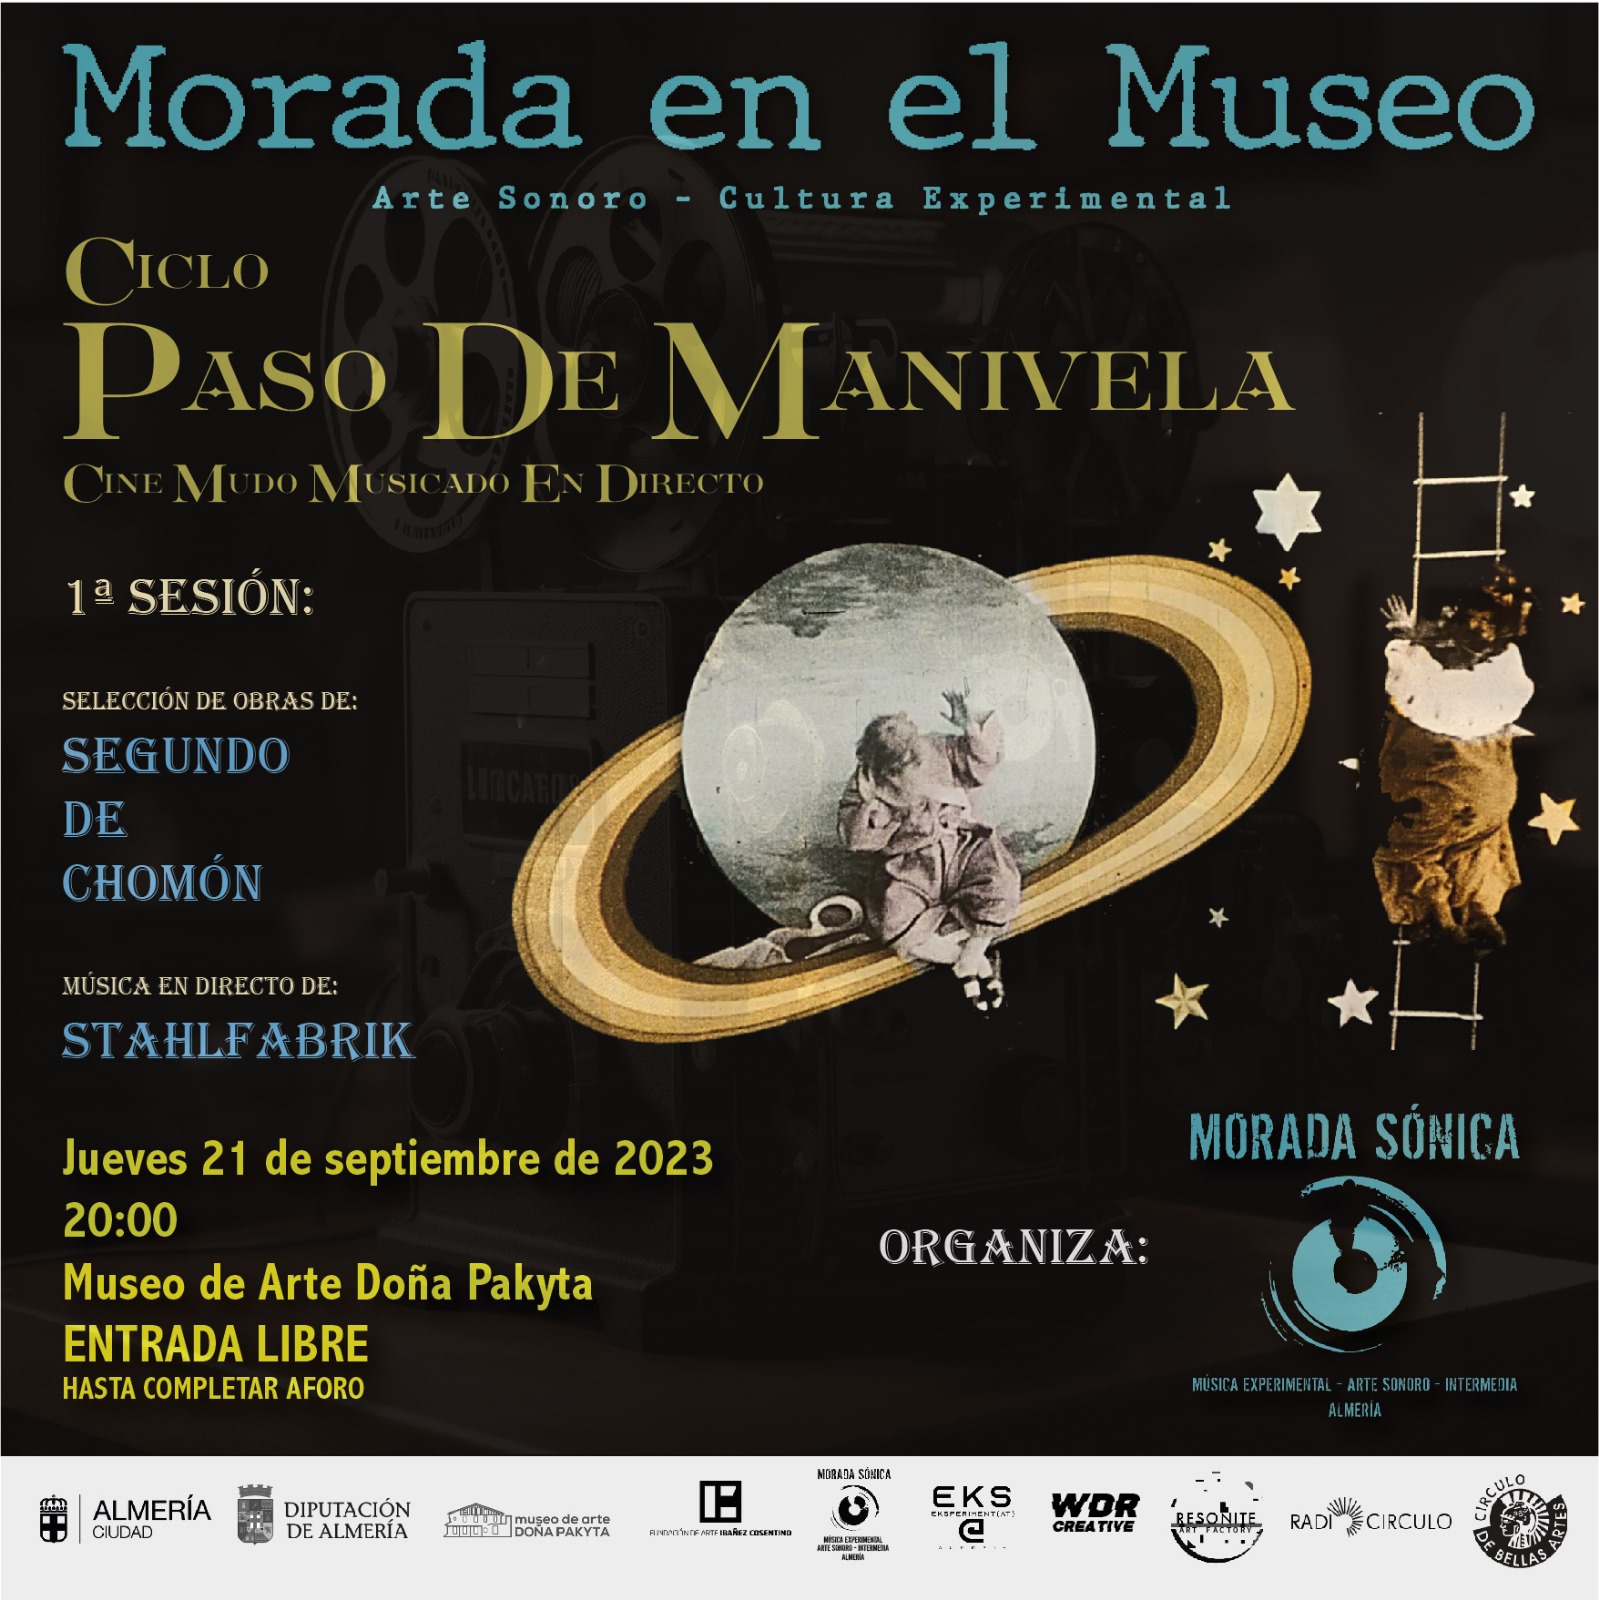 Morada en el Museo - Ciclo Paso de Manivela